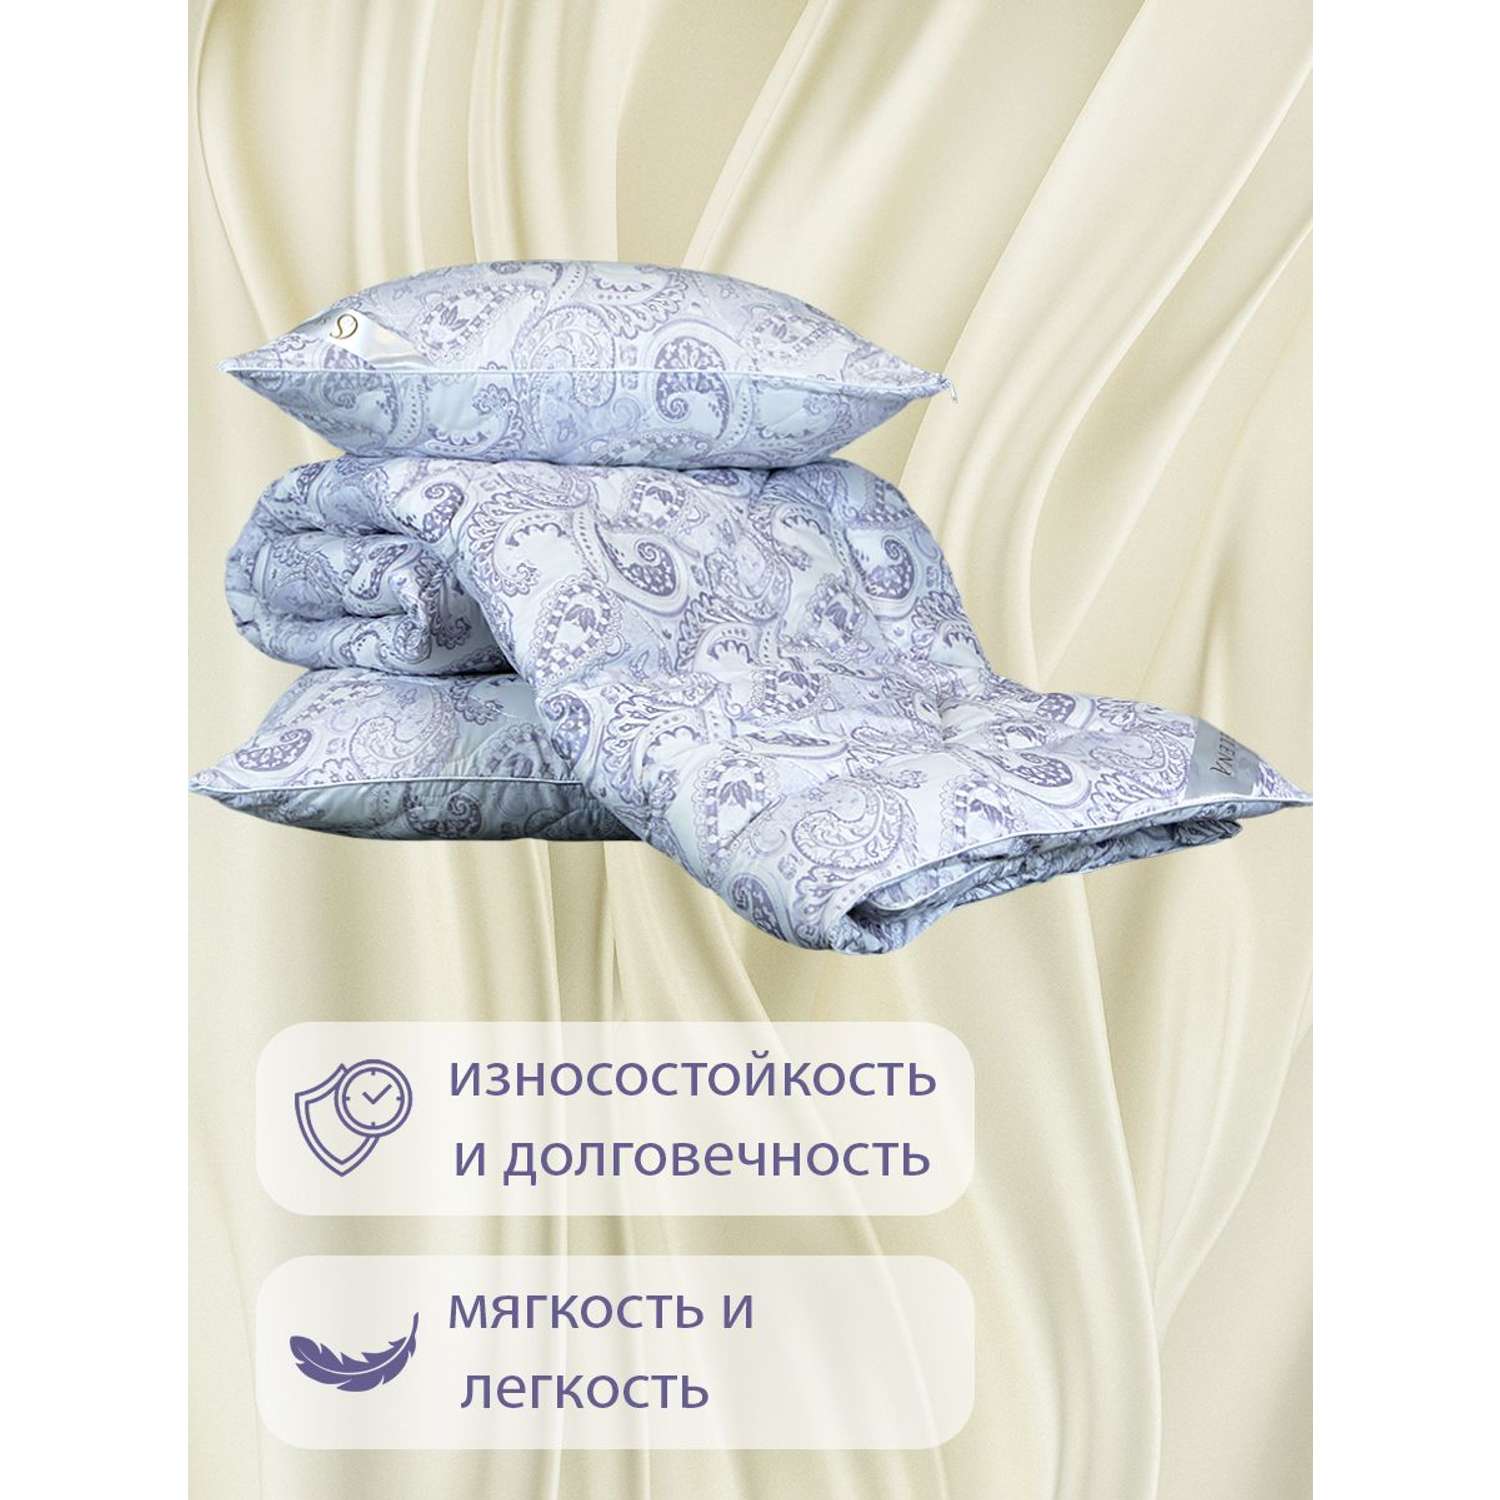 Одеяло SELENA Elegance Line КЕТО 2-х спальное 172x205см всесезонное поплекс 100% наполнитель Лебяжий пух - фото 5